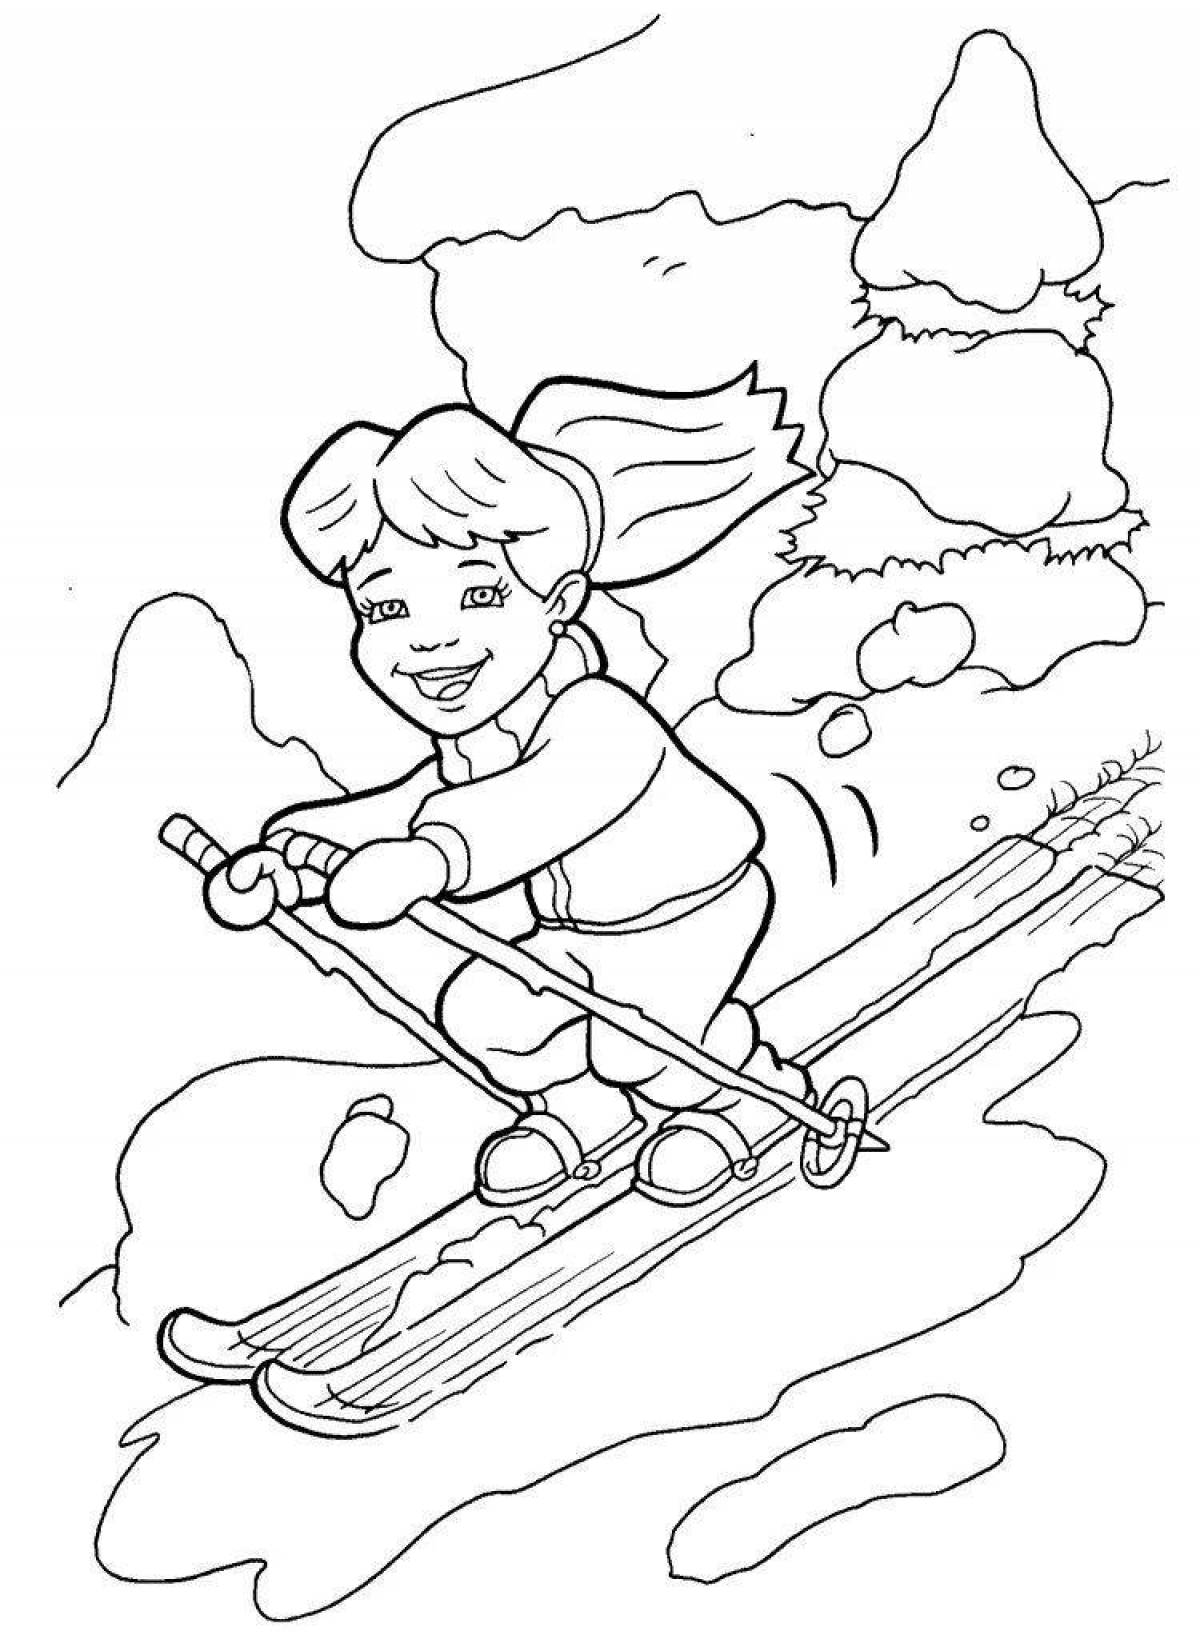 Прекрасная страница раскраски зимних видов спорта для детей